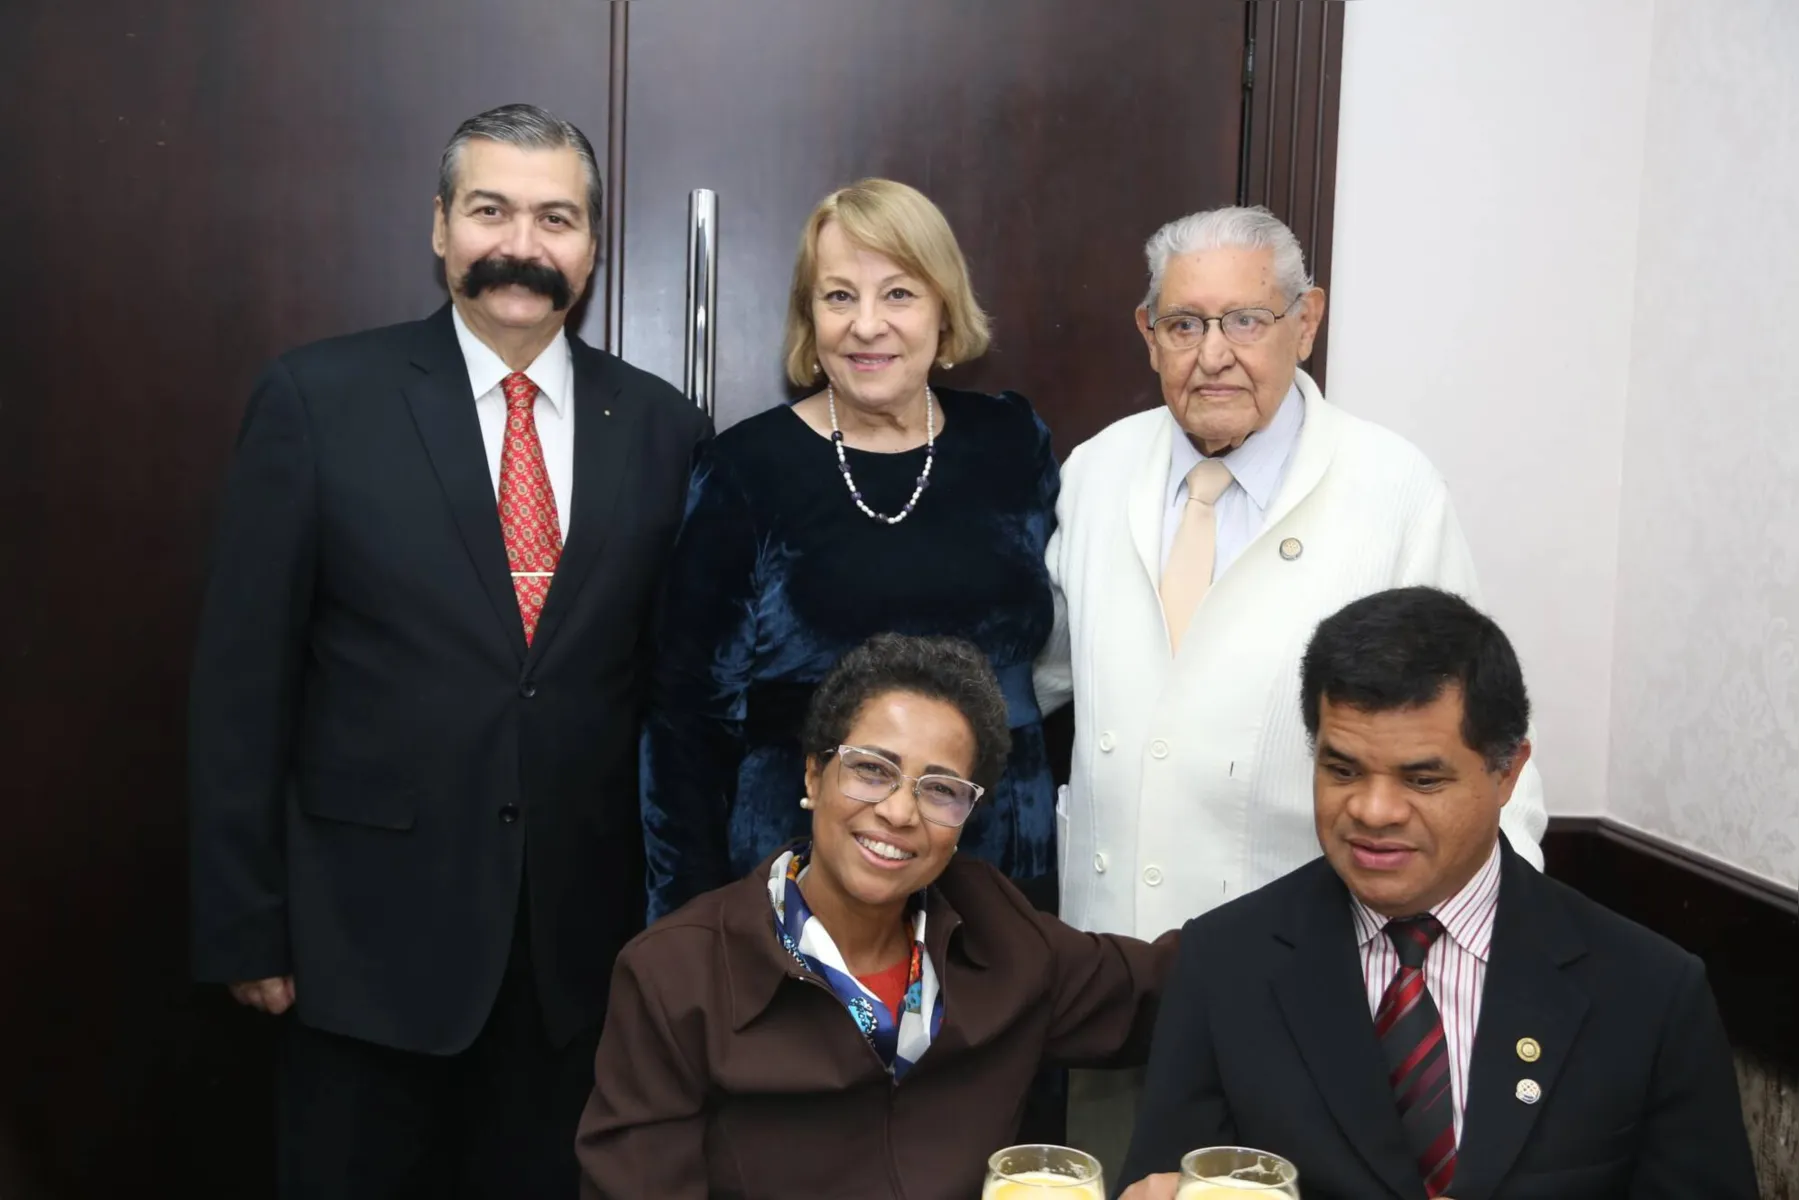 Alvino Aparecido Filho, Ivan Vaqueiro, João da Silva Lopes, Nilza Giroto e Rogério Lopes Franciscão durante o evento